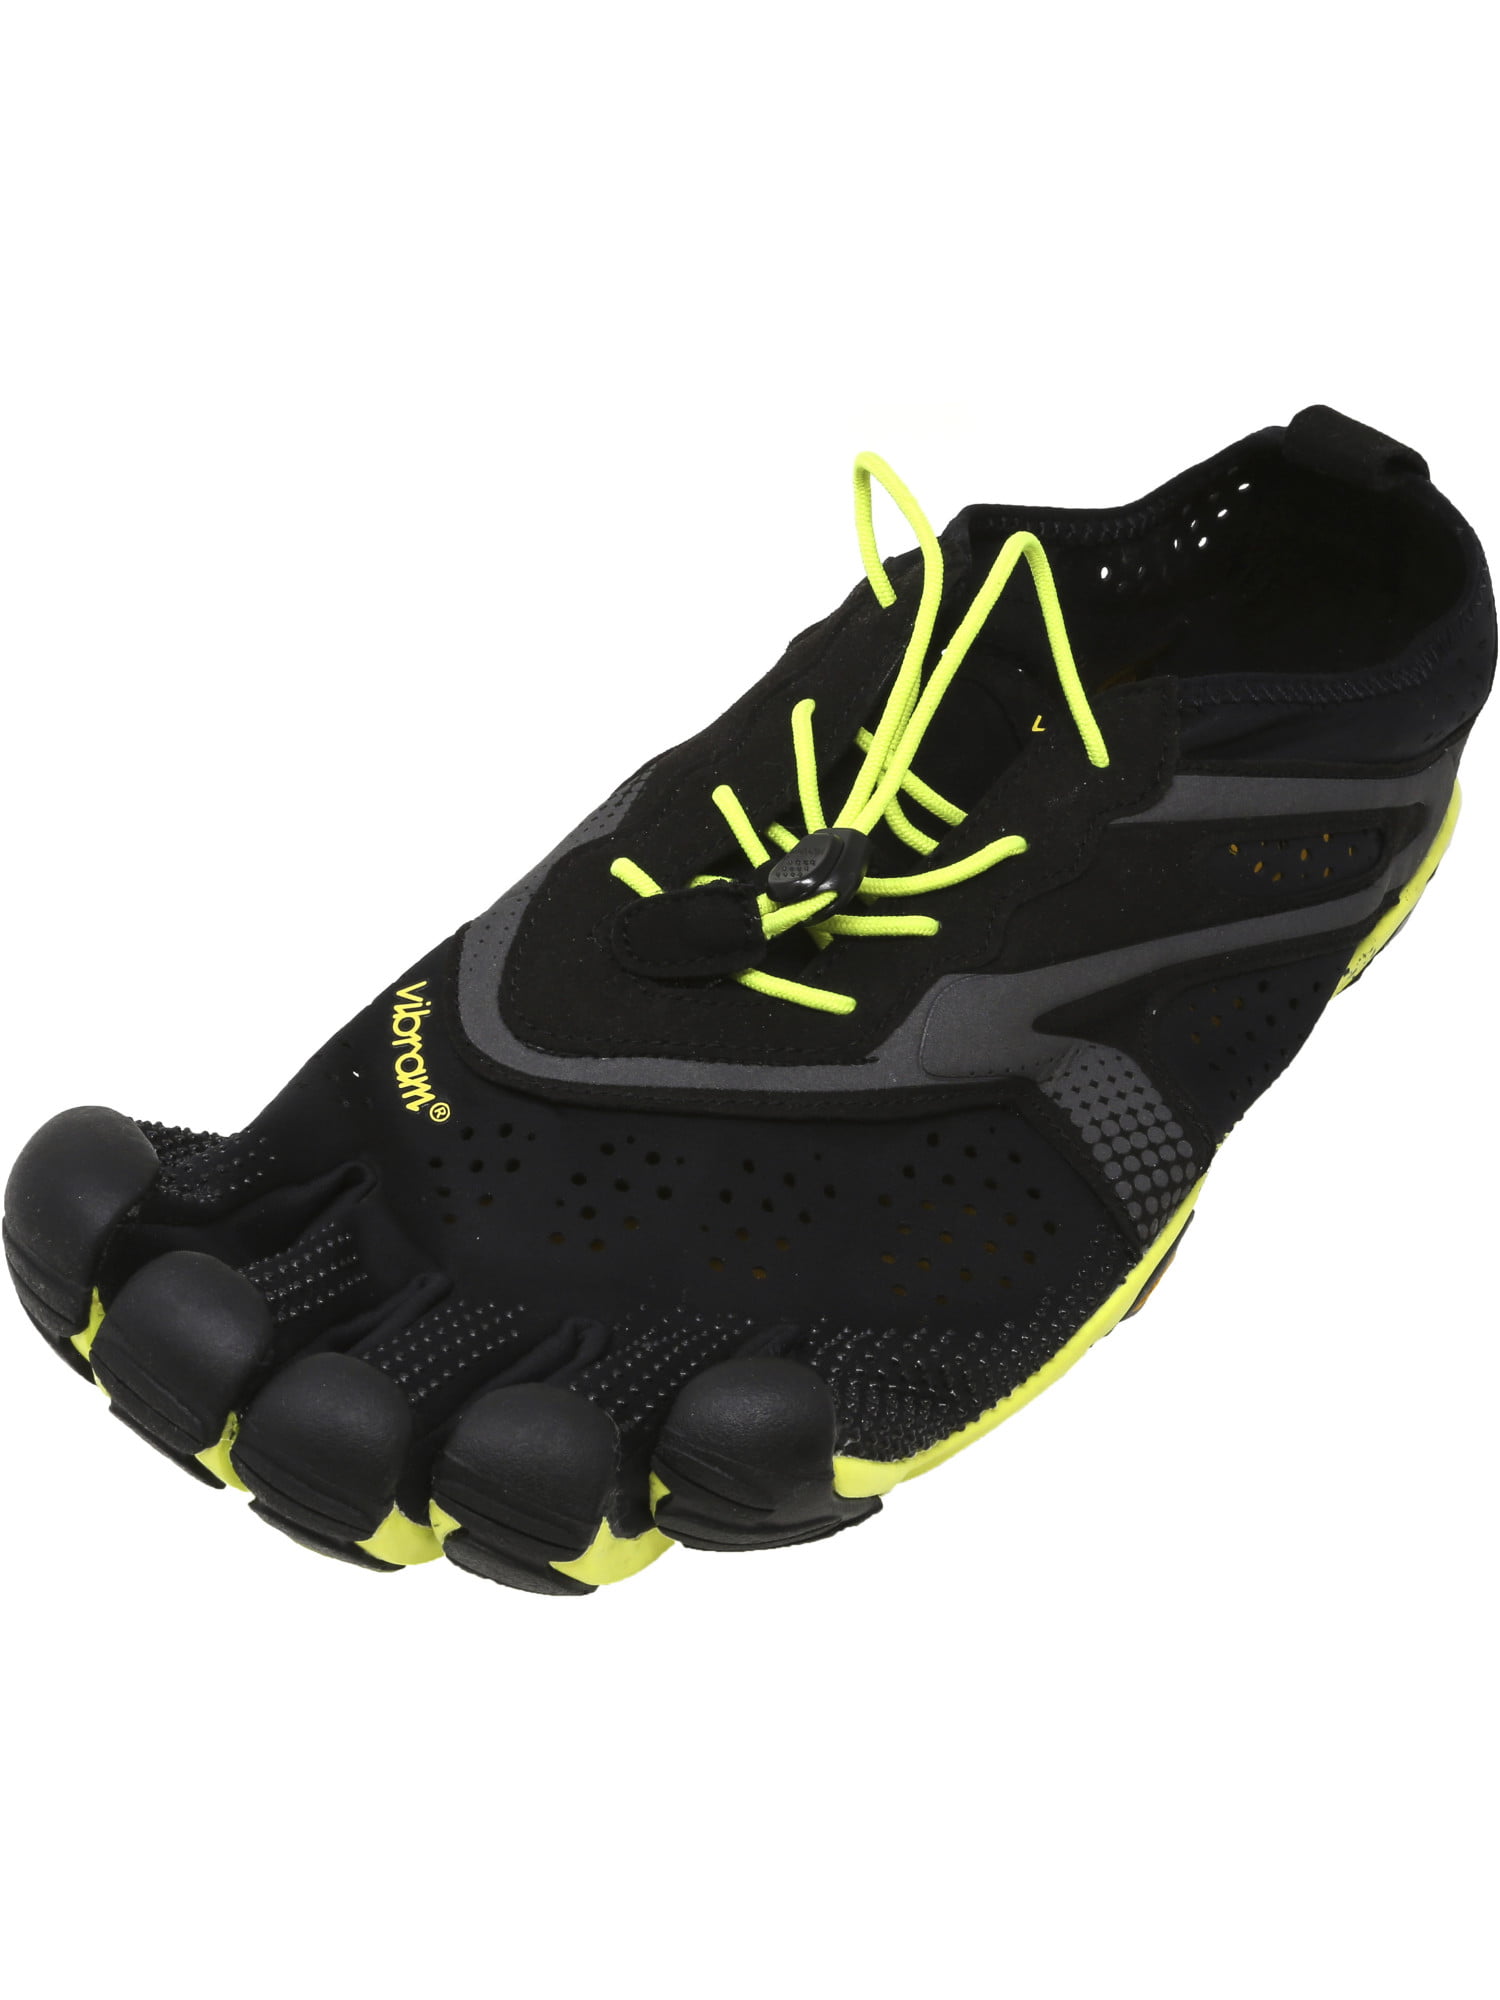 vibram men's v running shoe